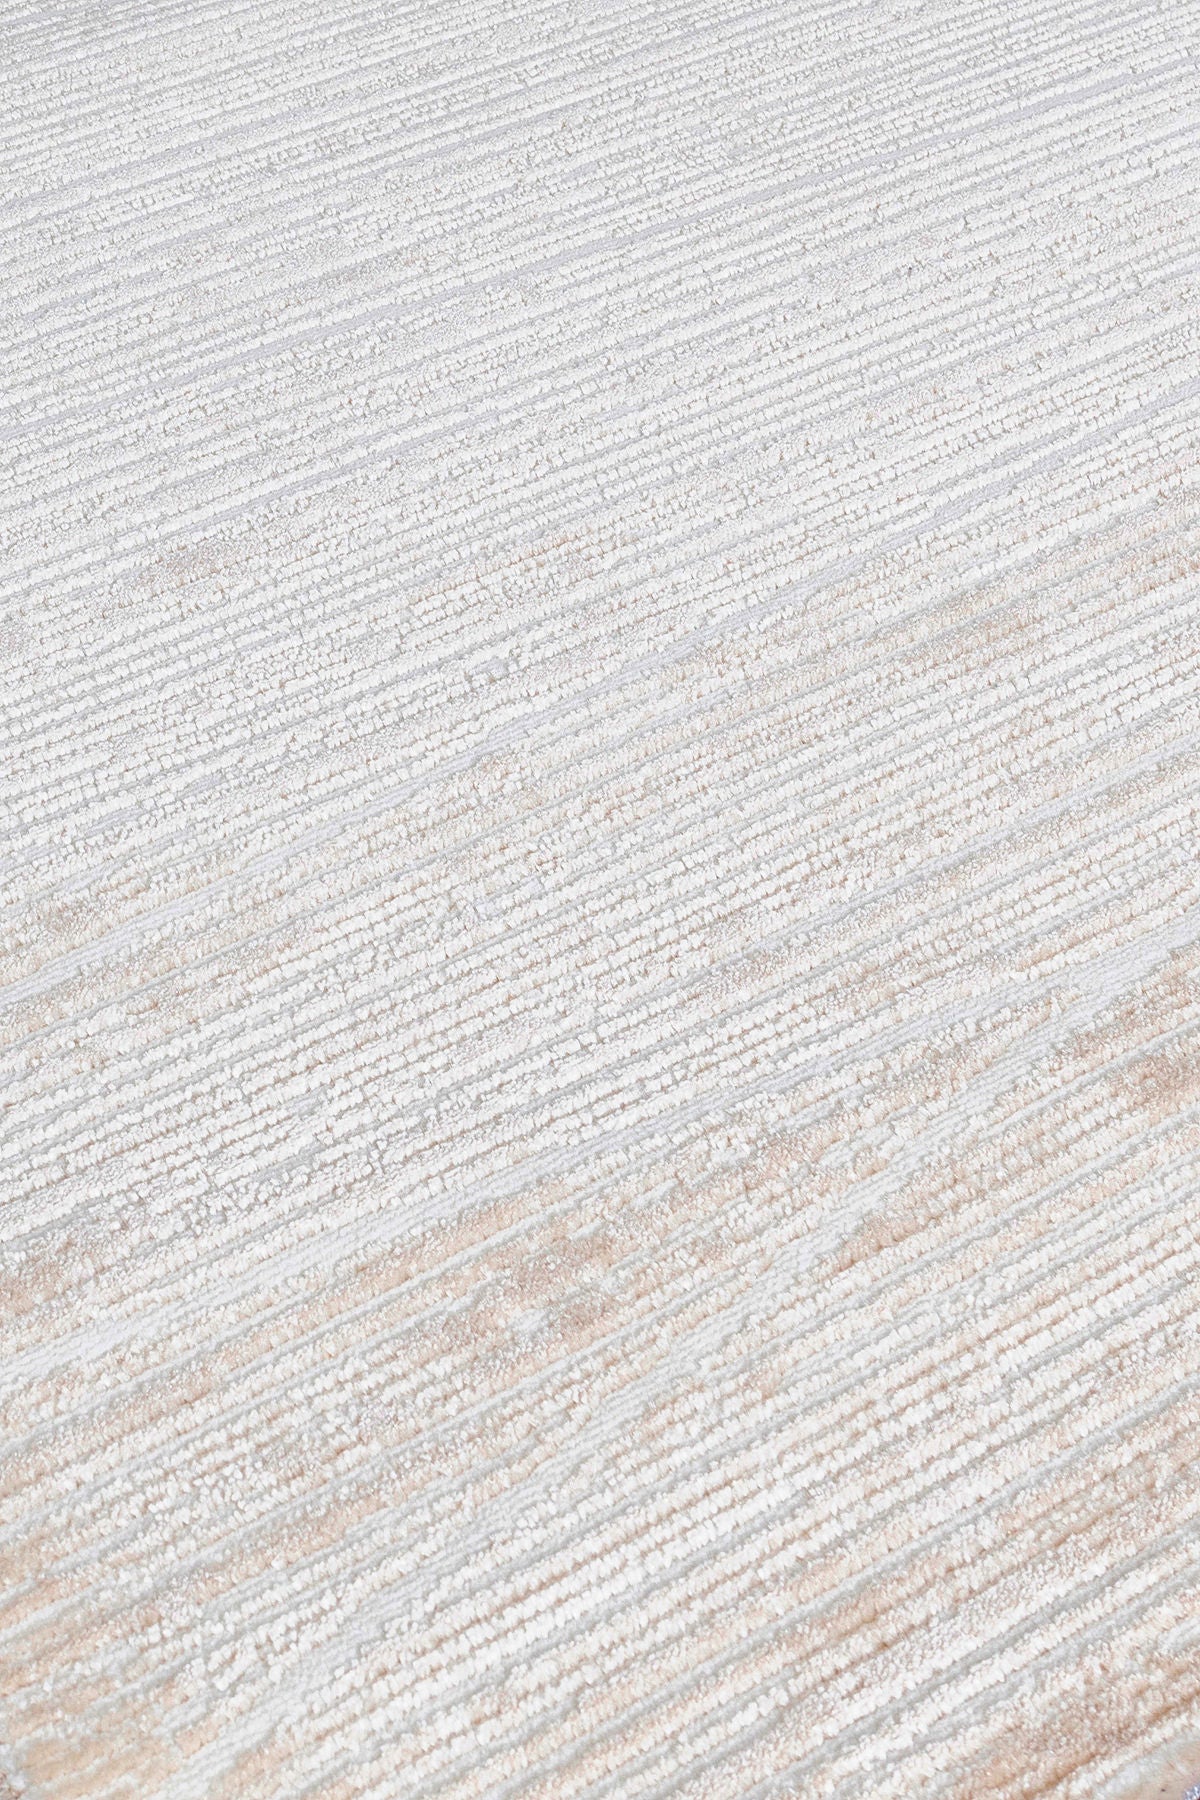 Moda 1510 - Beige - Carpet (80 x 150)